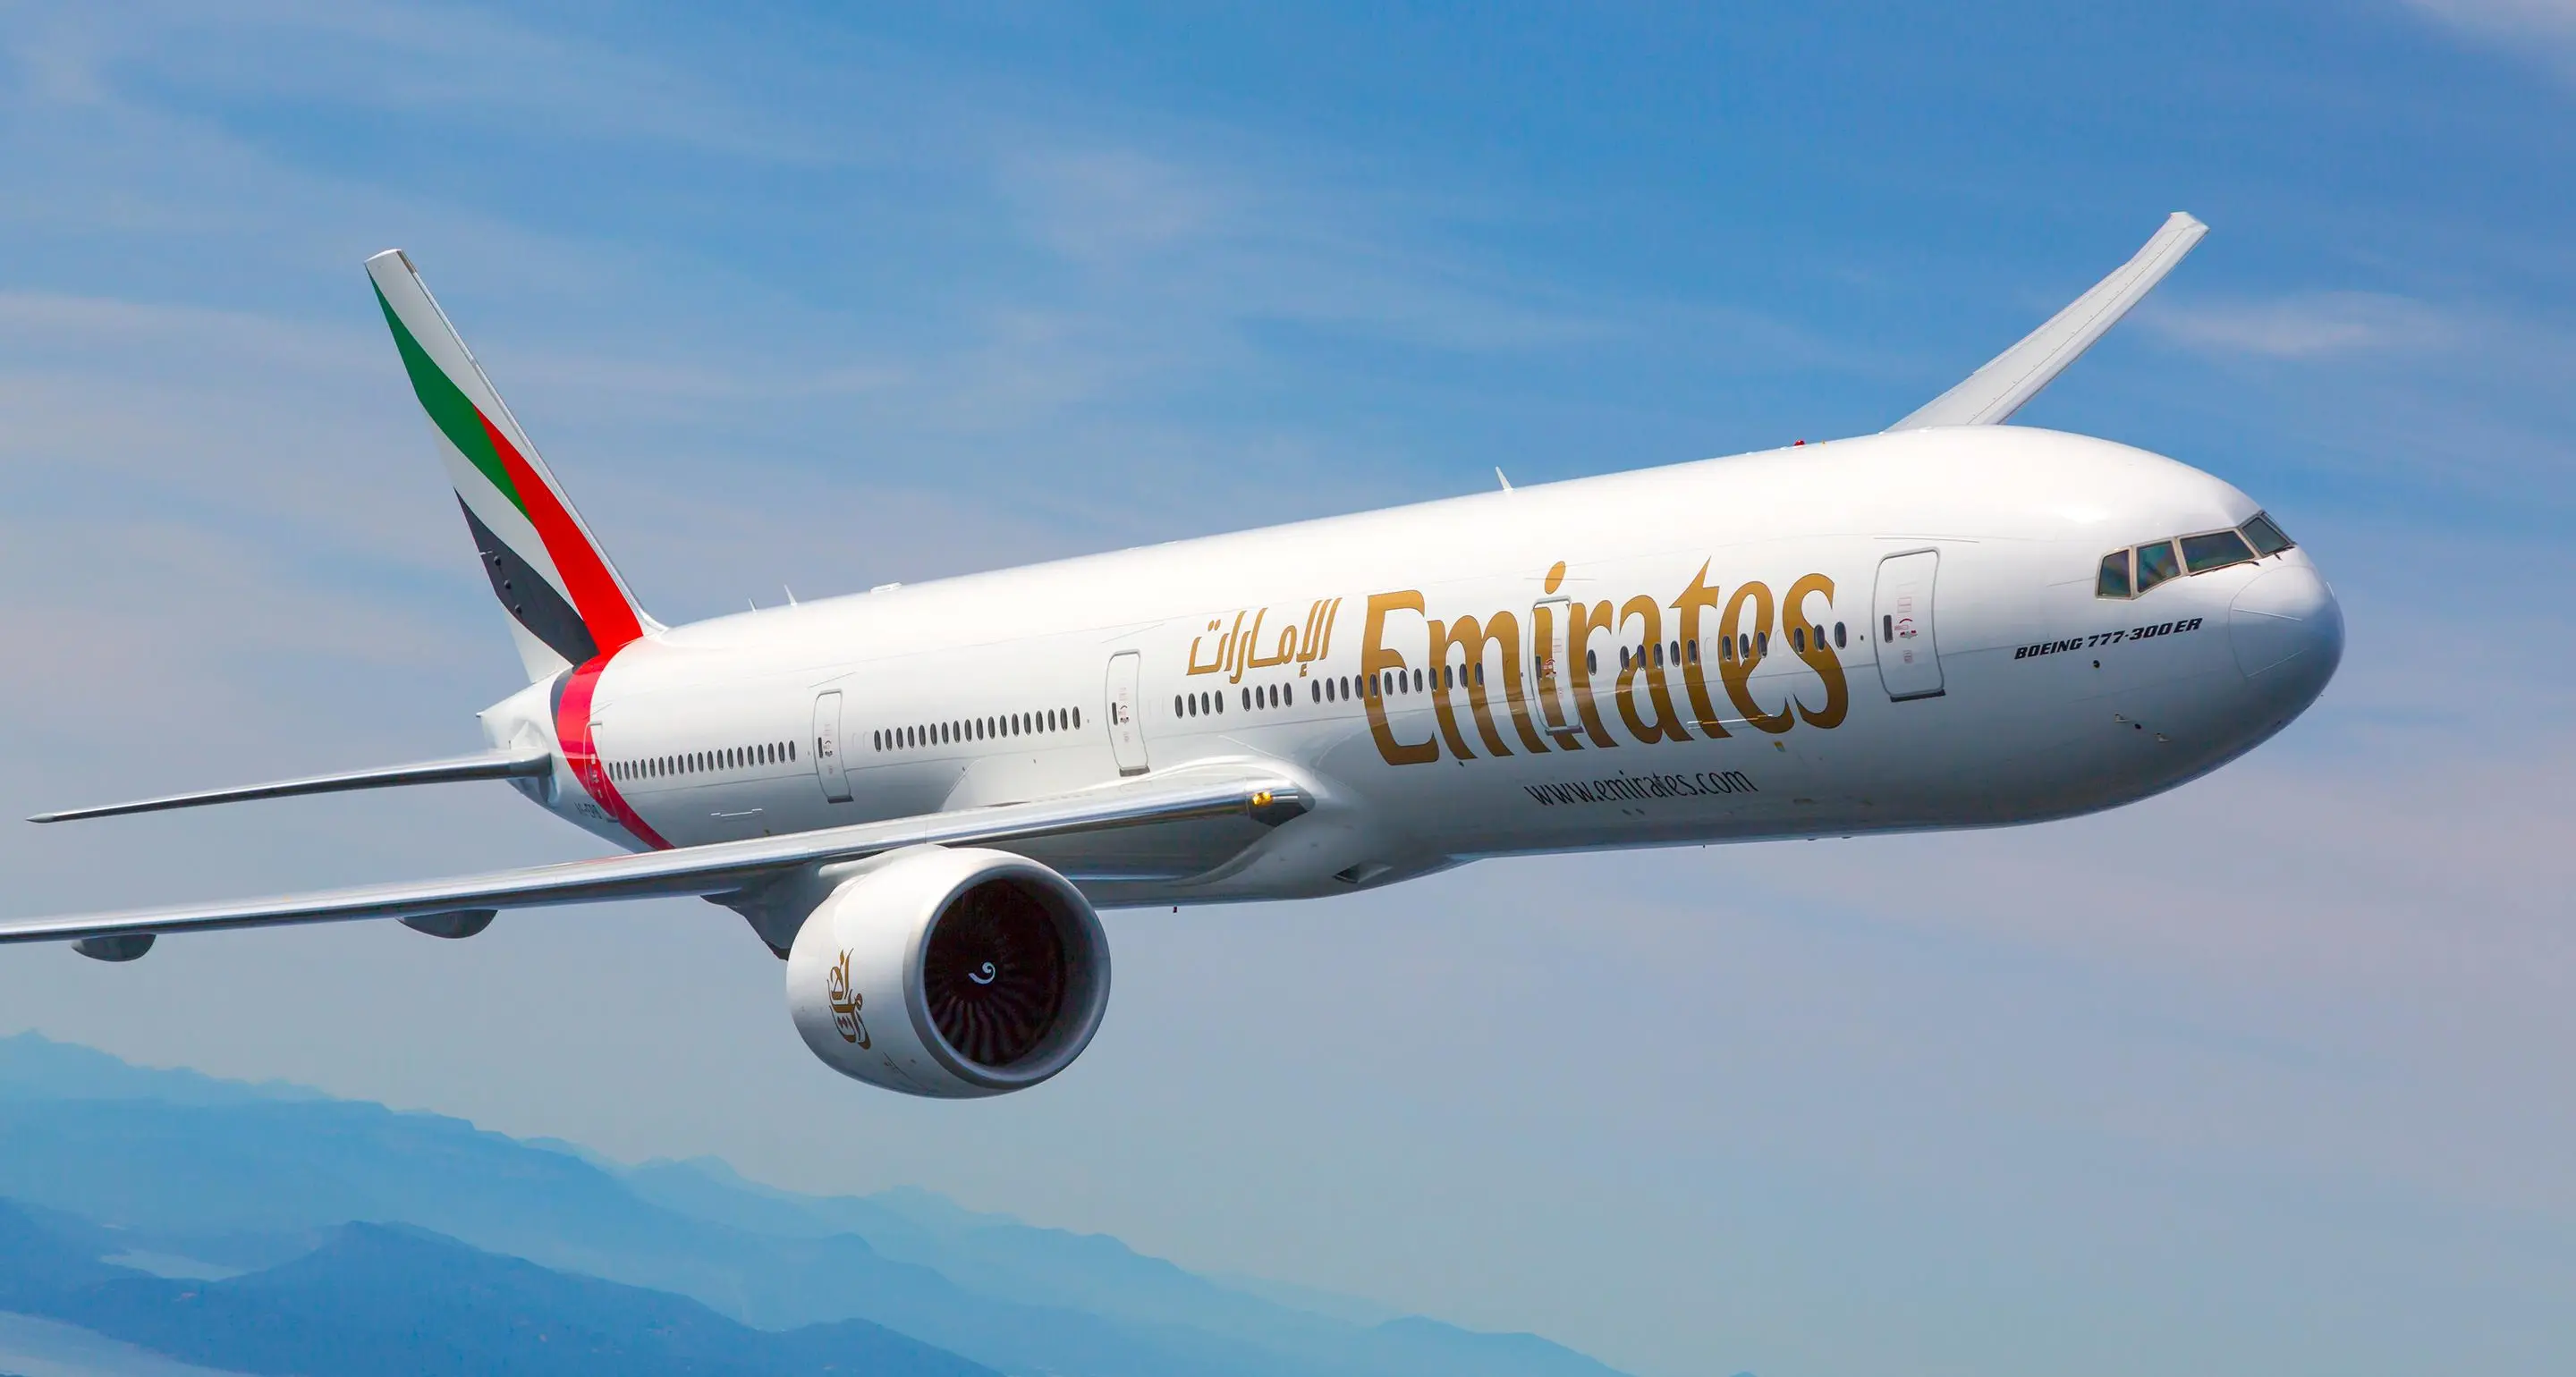 Emirates partners with Mauritius and Uganda